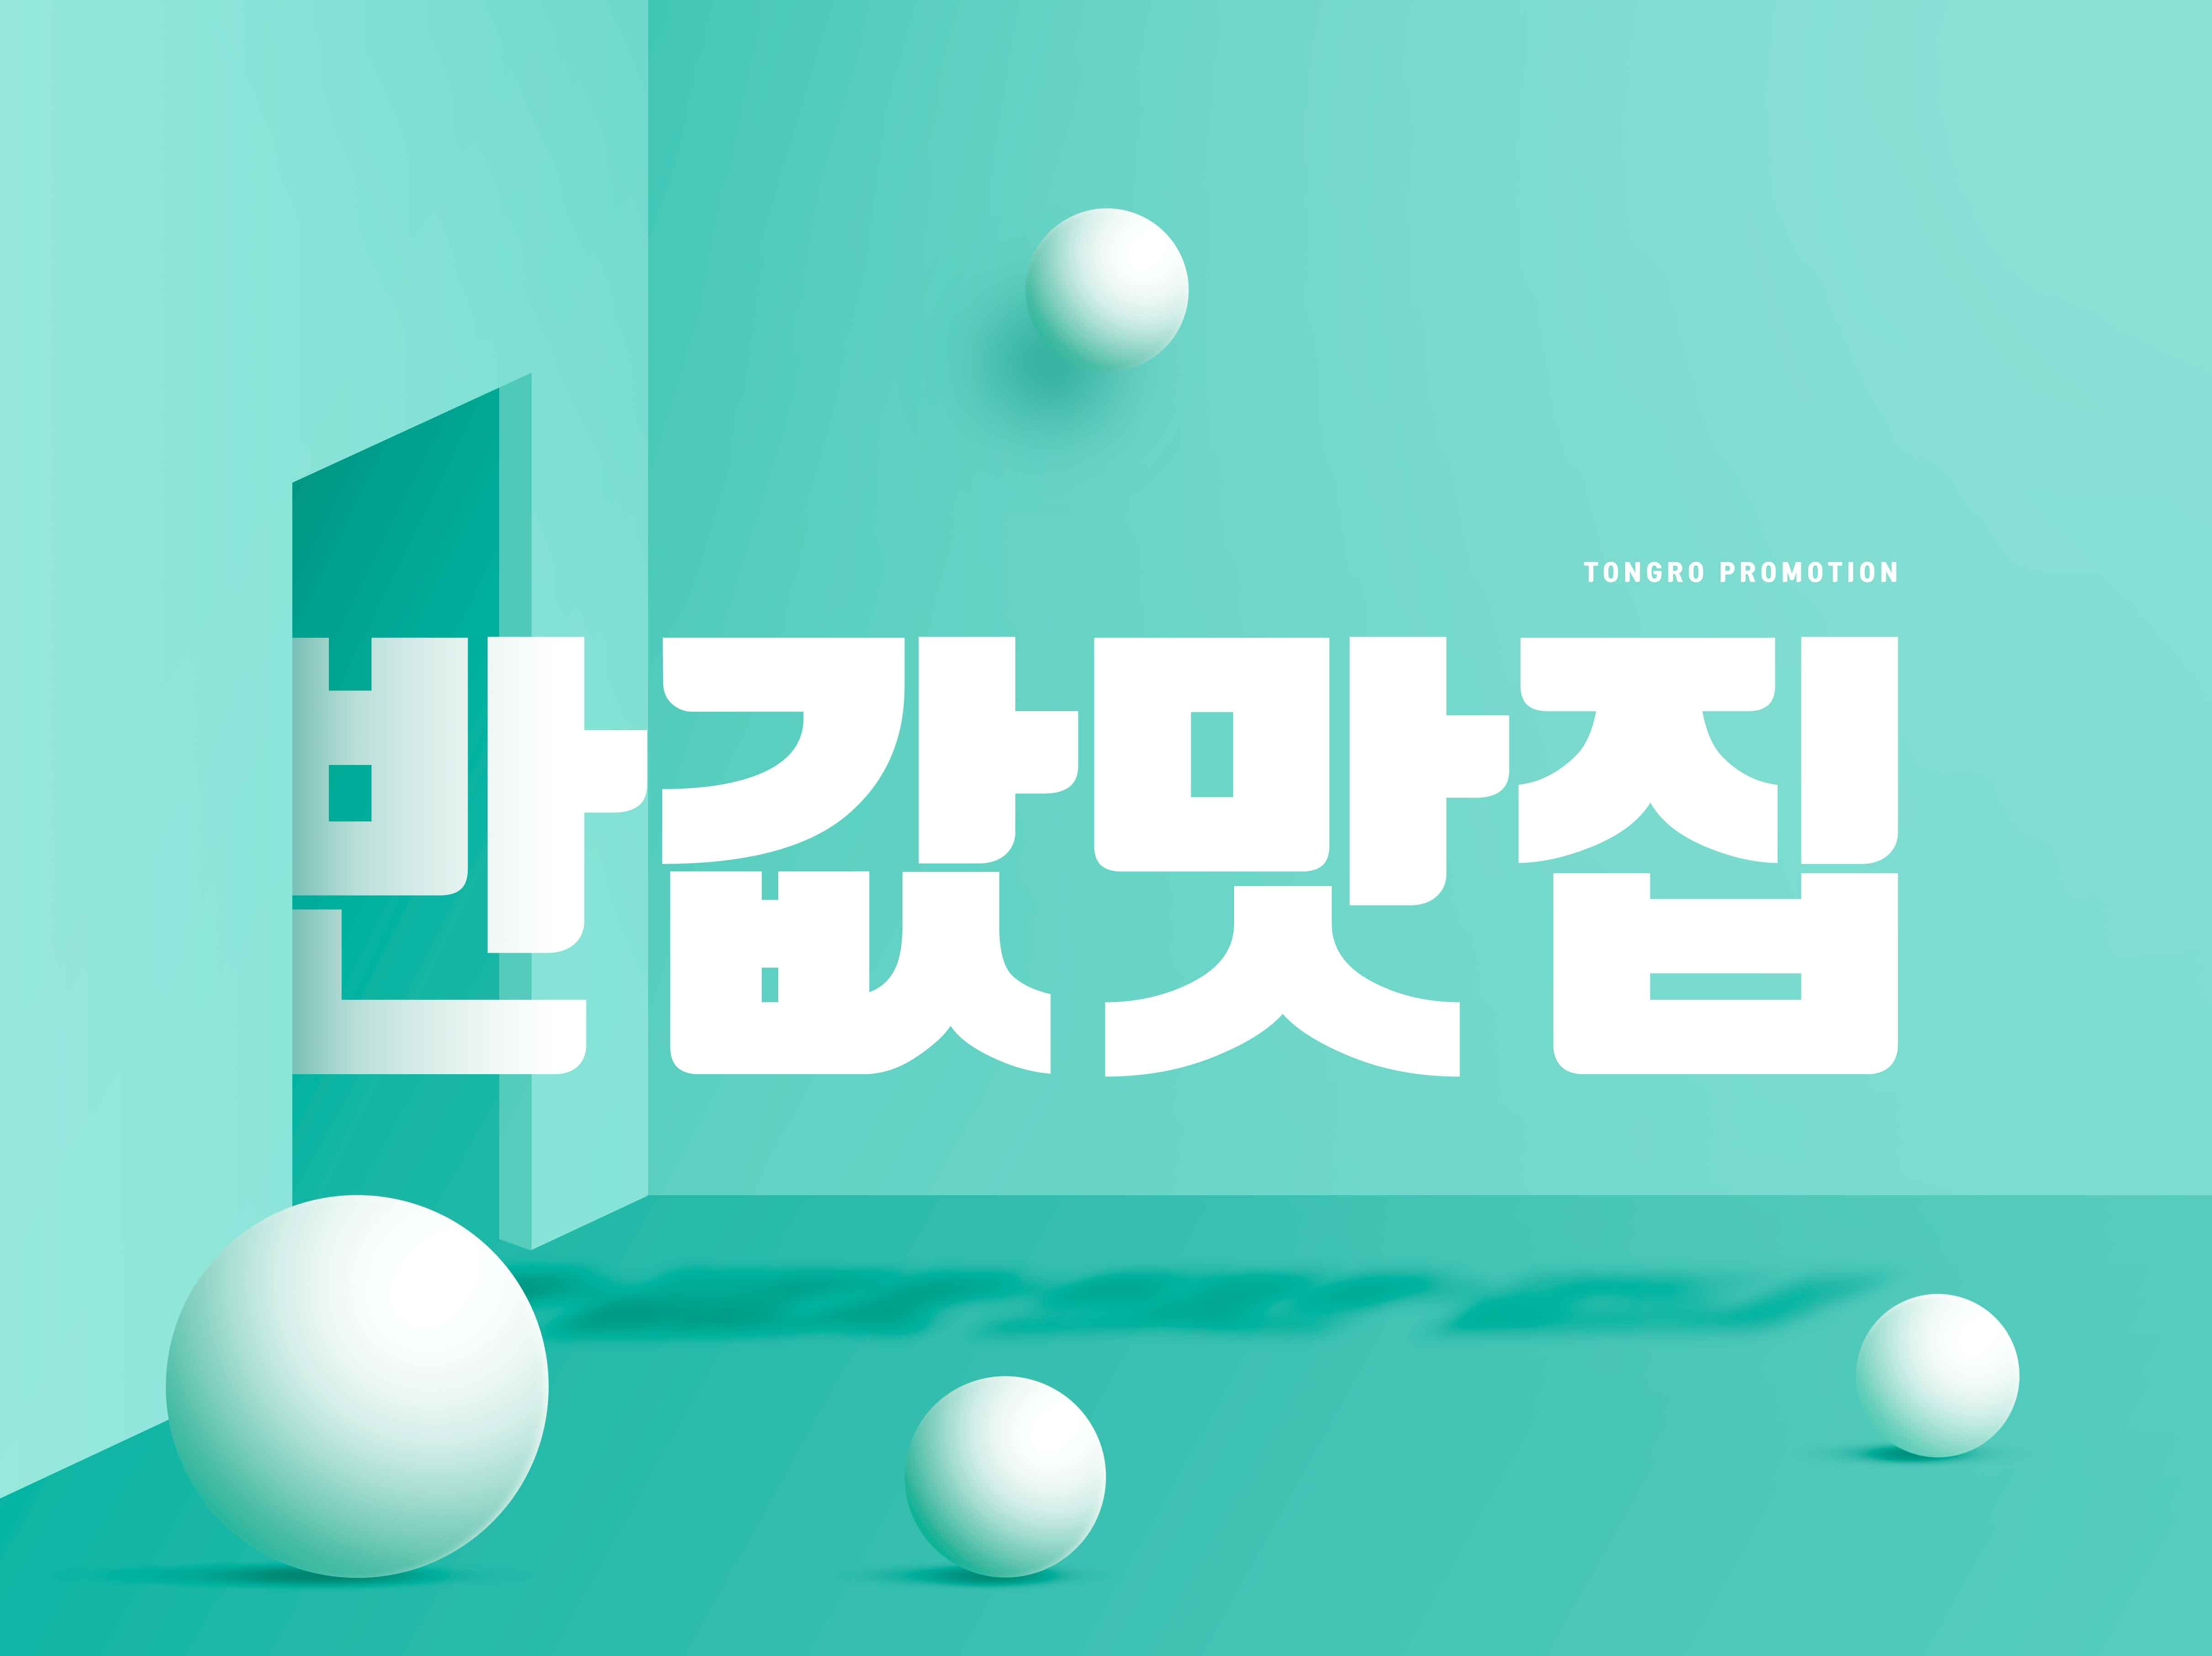 创意几何元素促销海报PSD素材第一素材精选韩国素材合集插图(4)